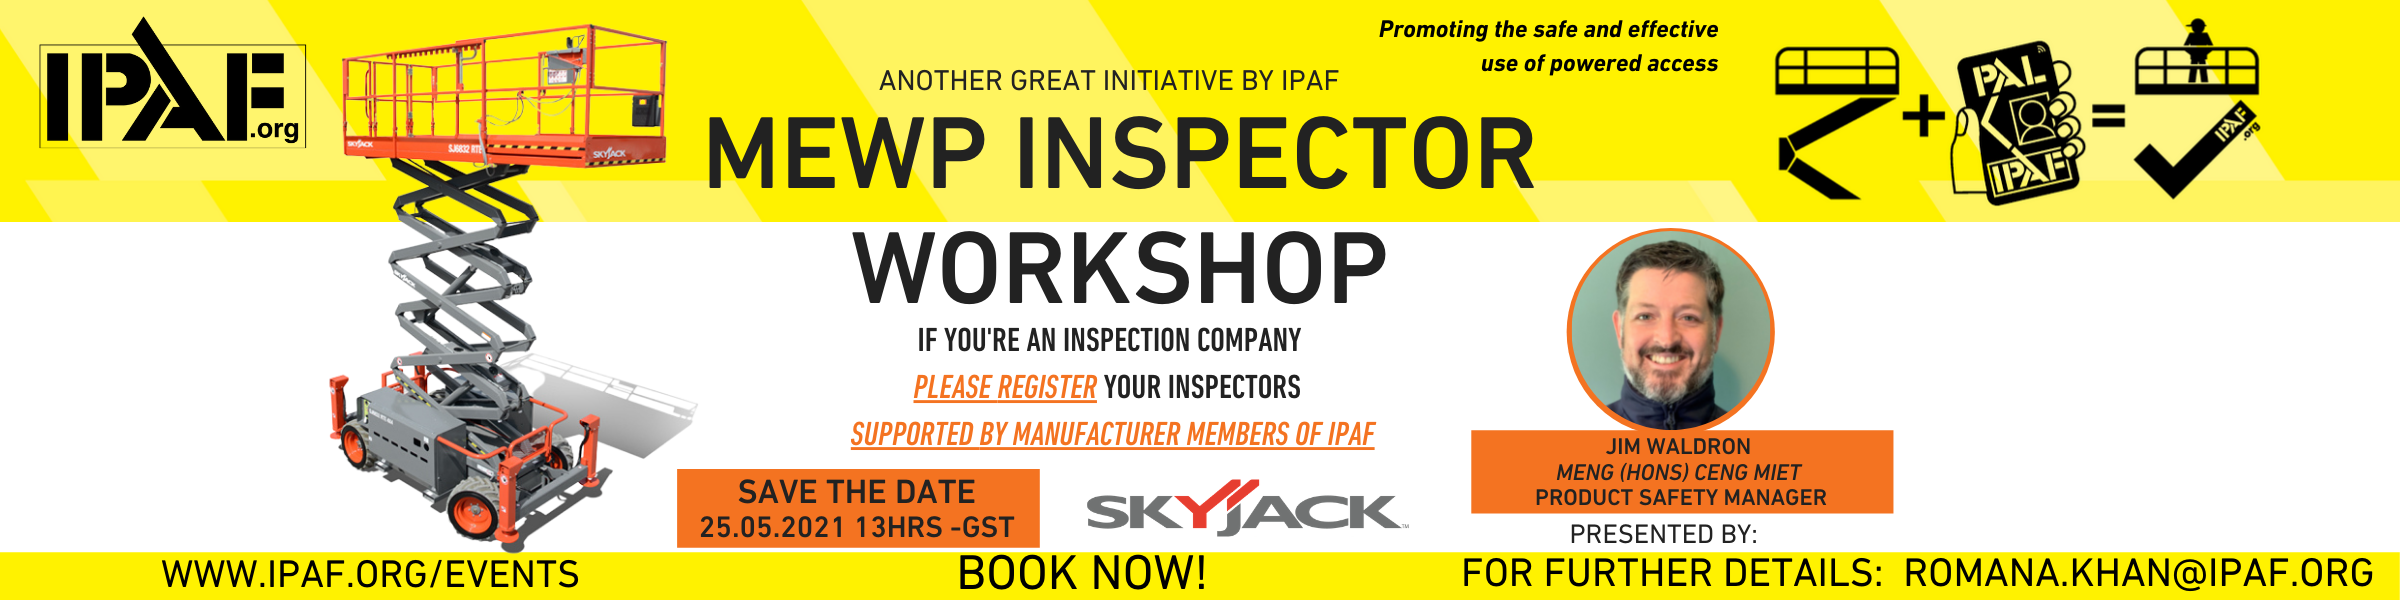 IPAF Workshop